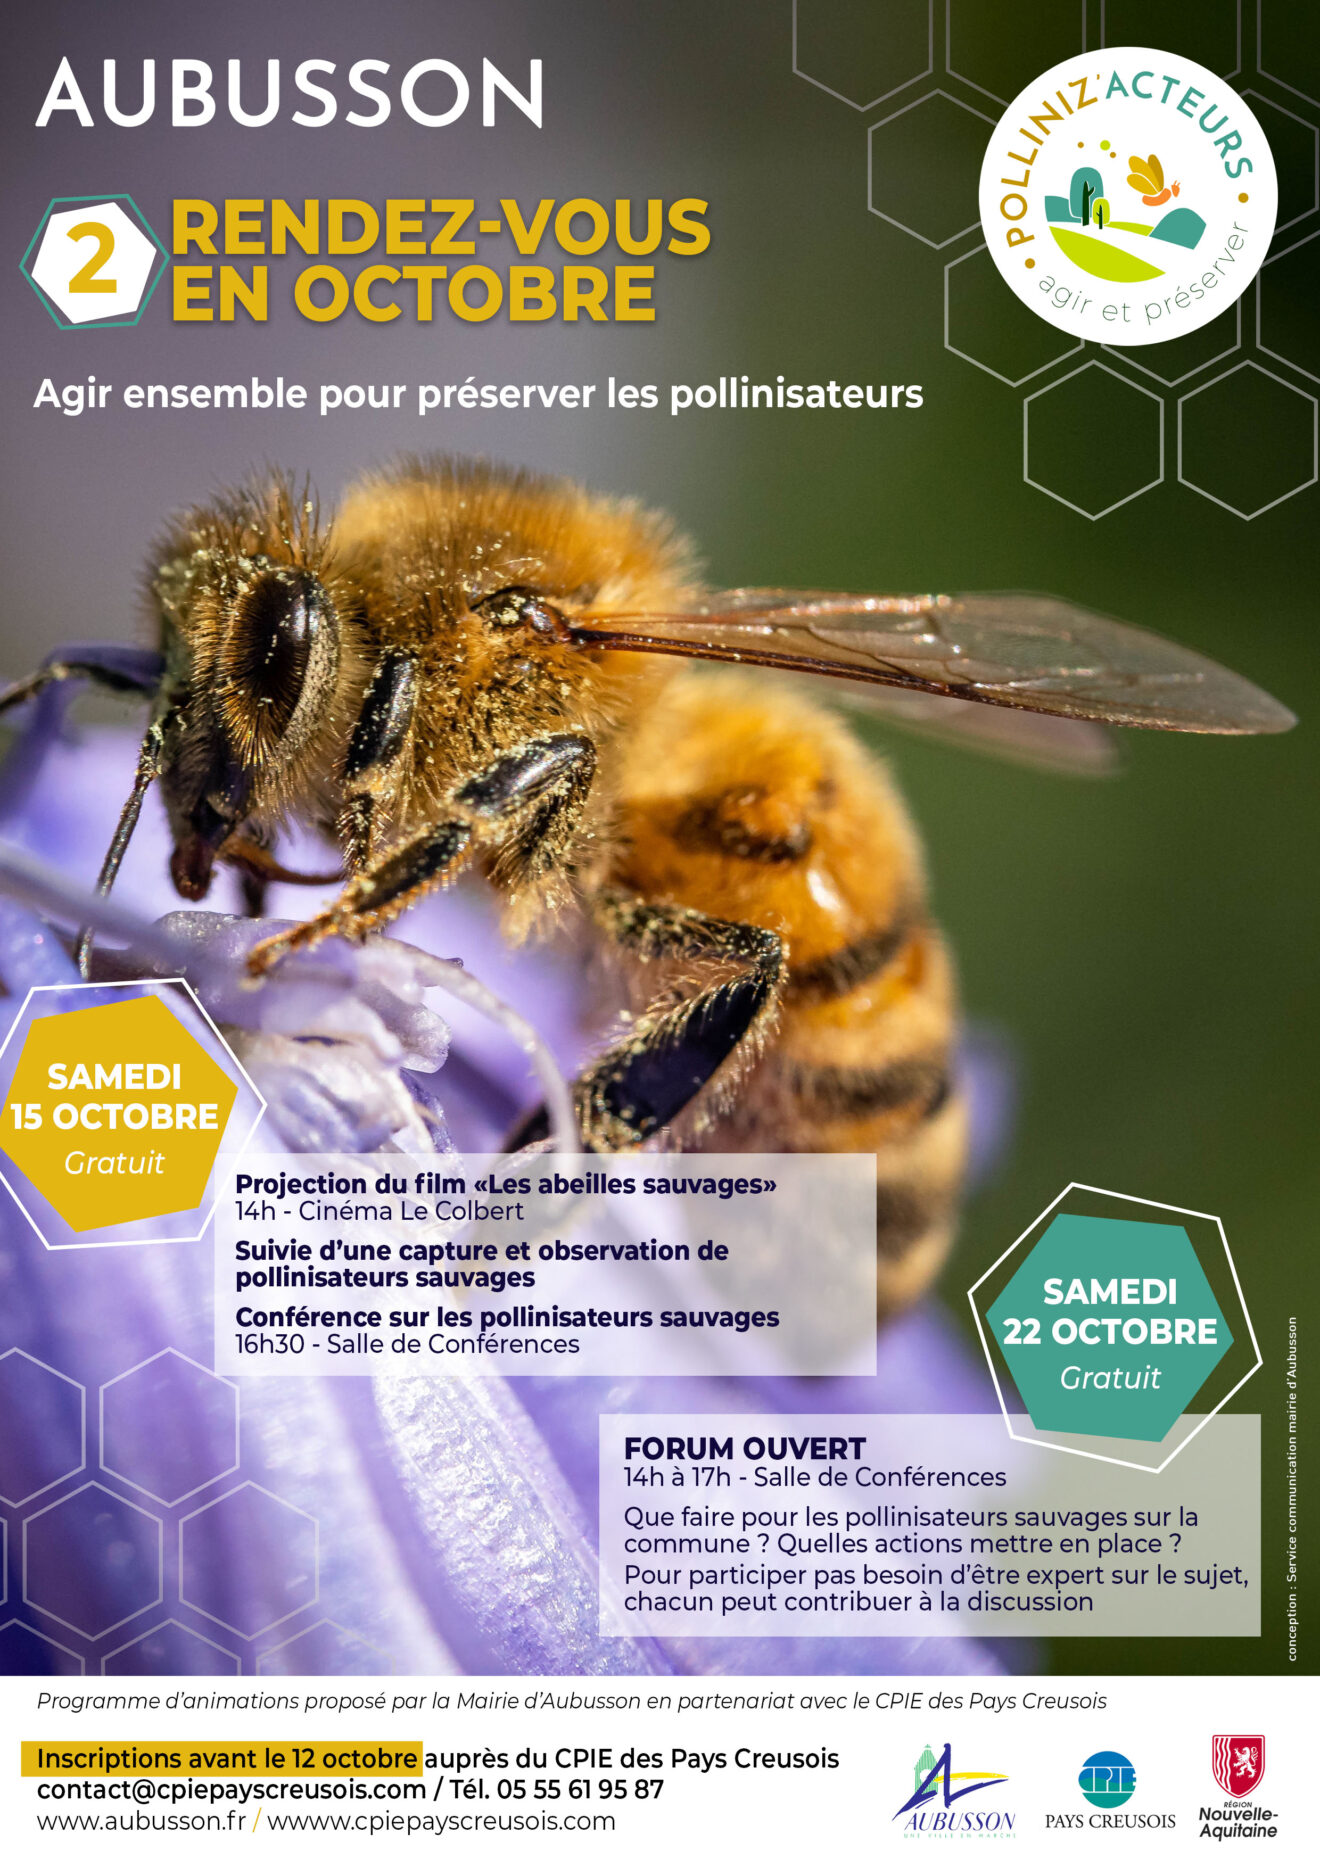 Forum ouvert - Agir ensemble pour préserver les pollinisateurs